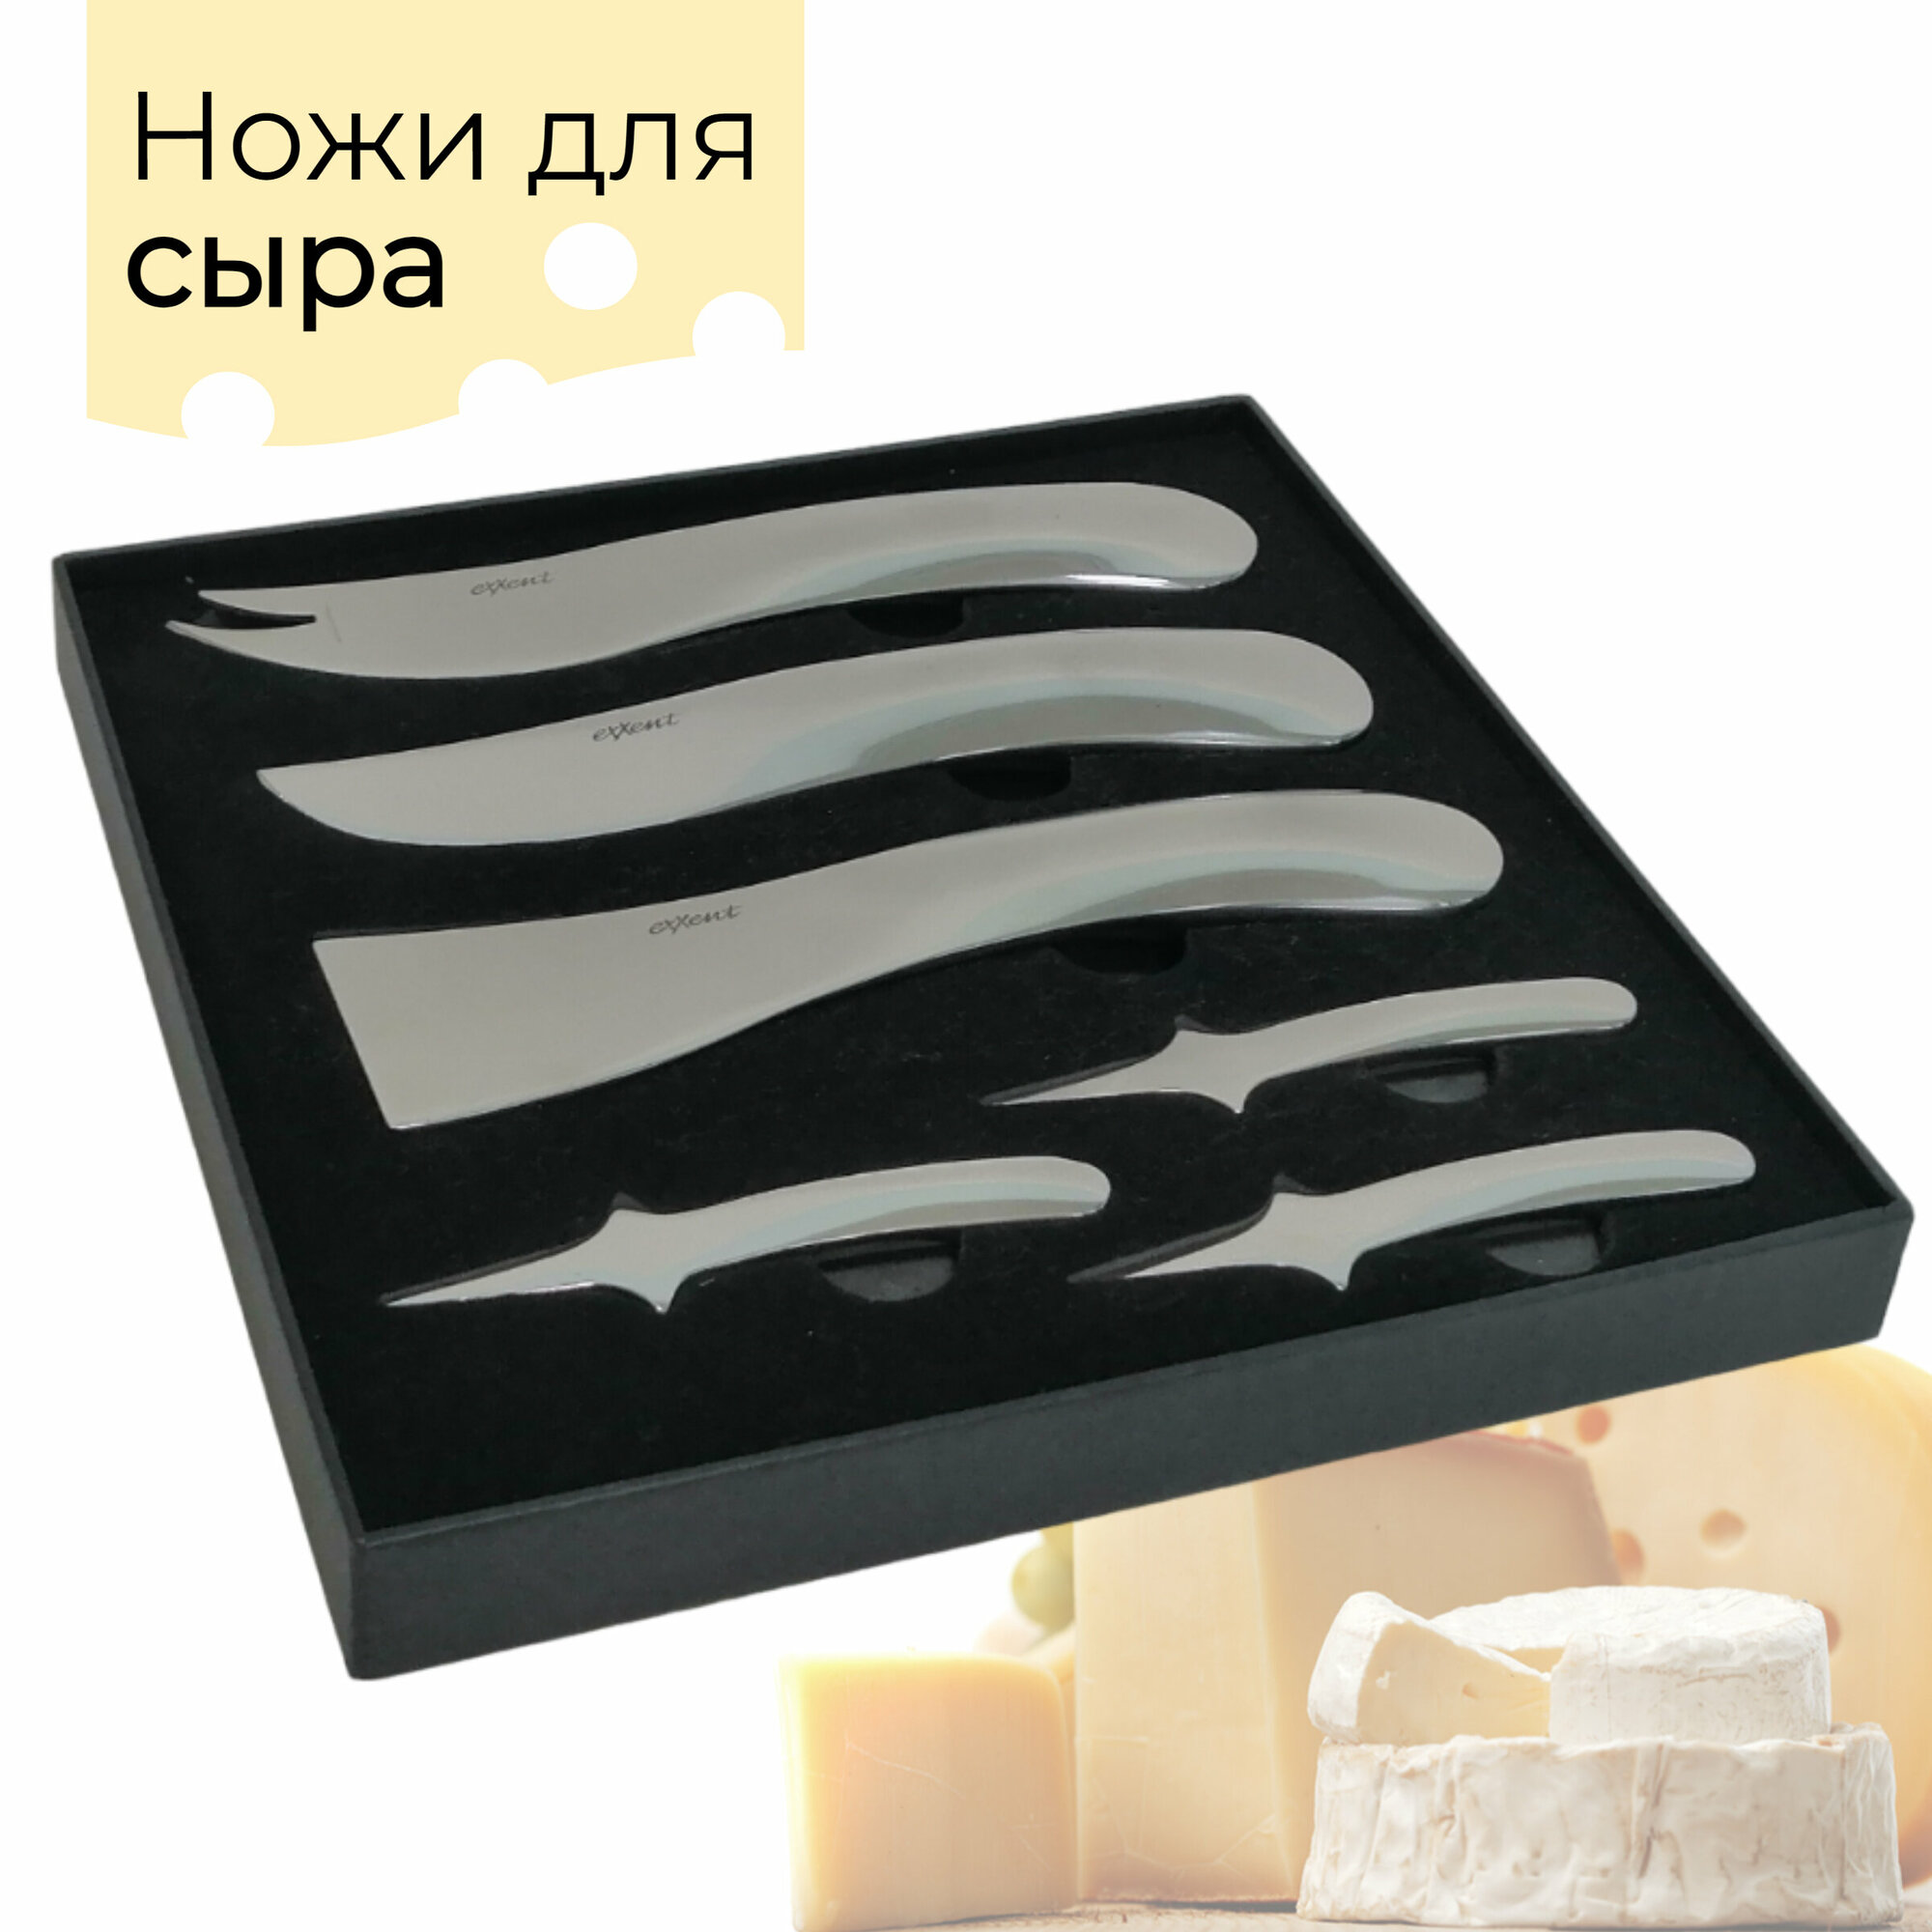 Подарочный набор ножей для сыра Nordic style